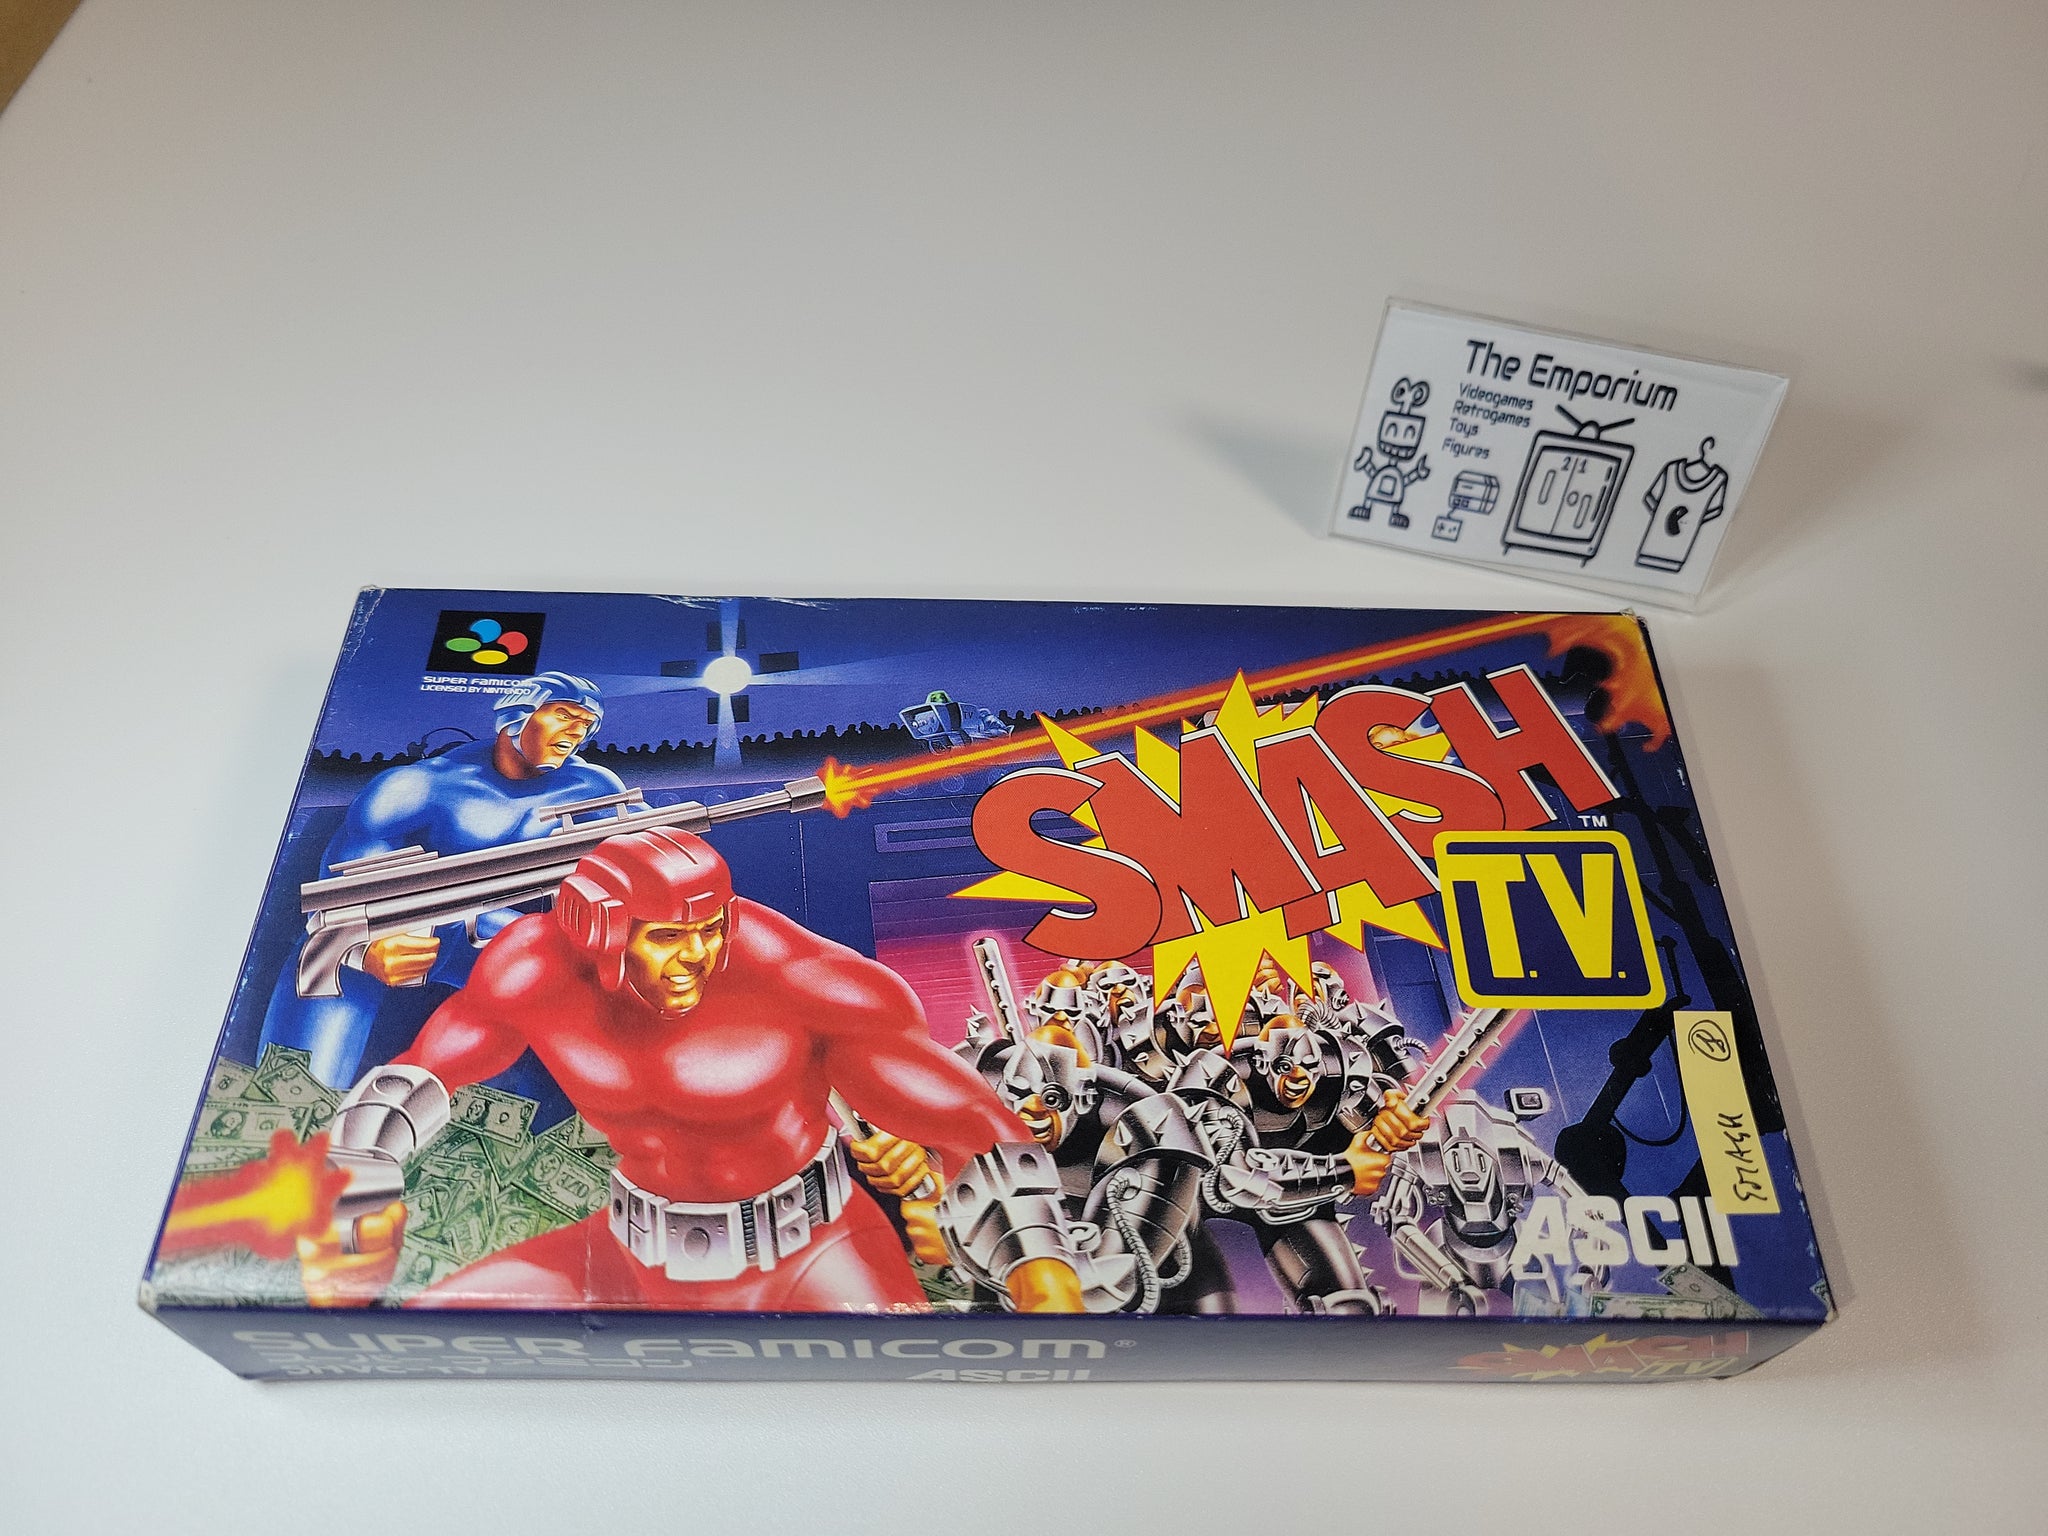 Smash TV - Nintendo Sfc Super Famicom – The Emporium RetroGames